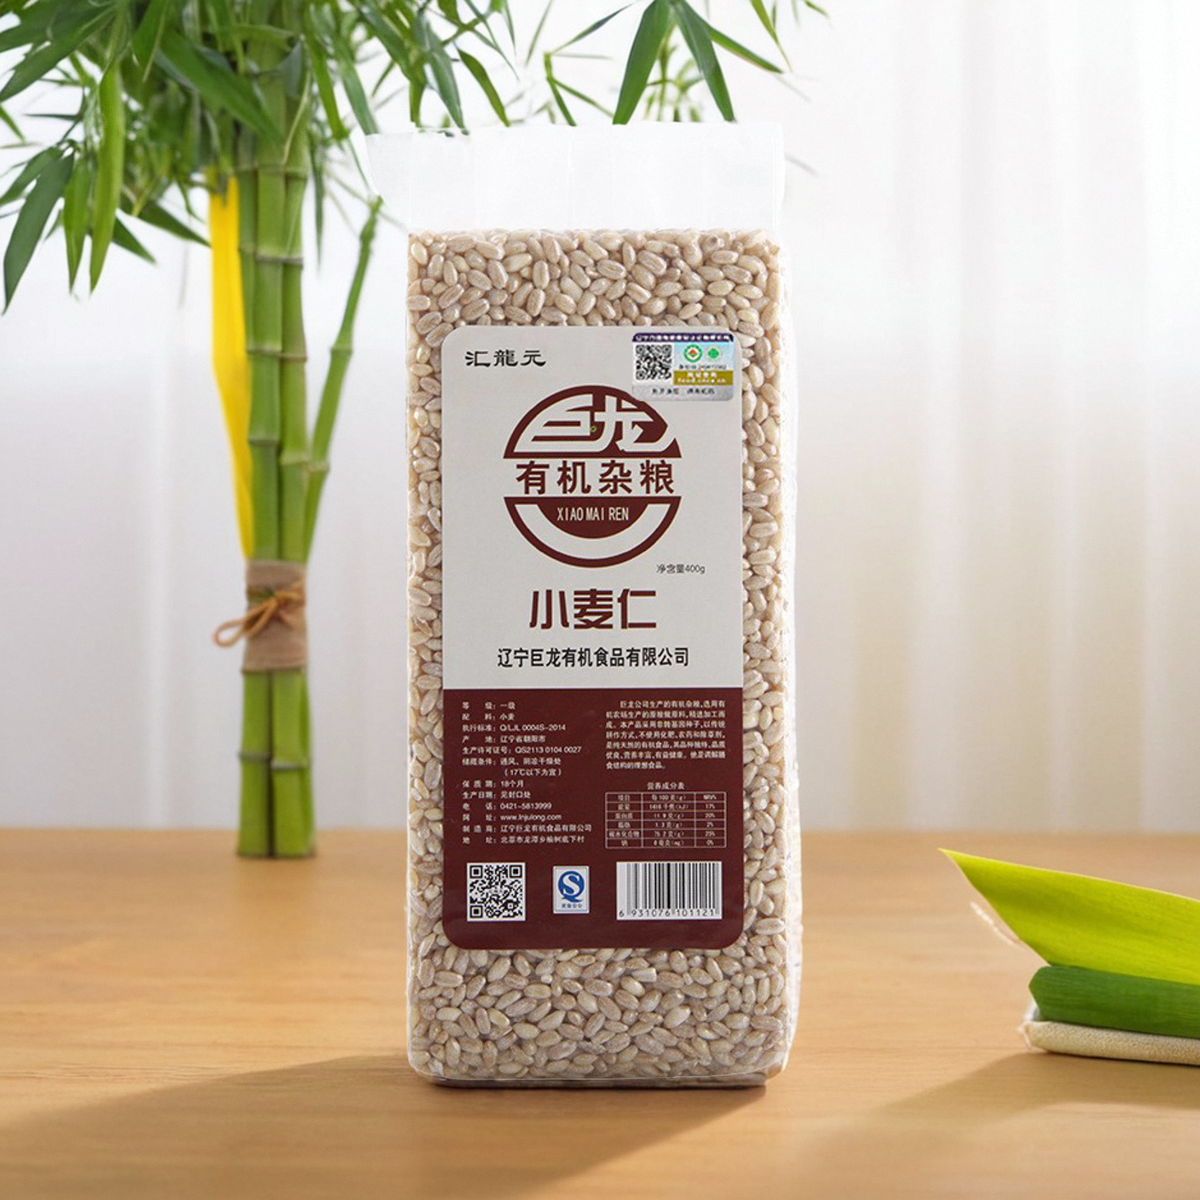 有机小麦仁米400g新鲜无添加优质新麦仁米去皮脱壳带胚芽煮粥饭用